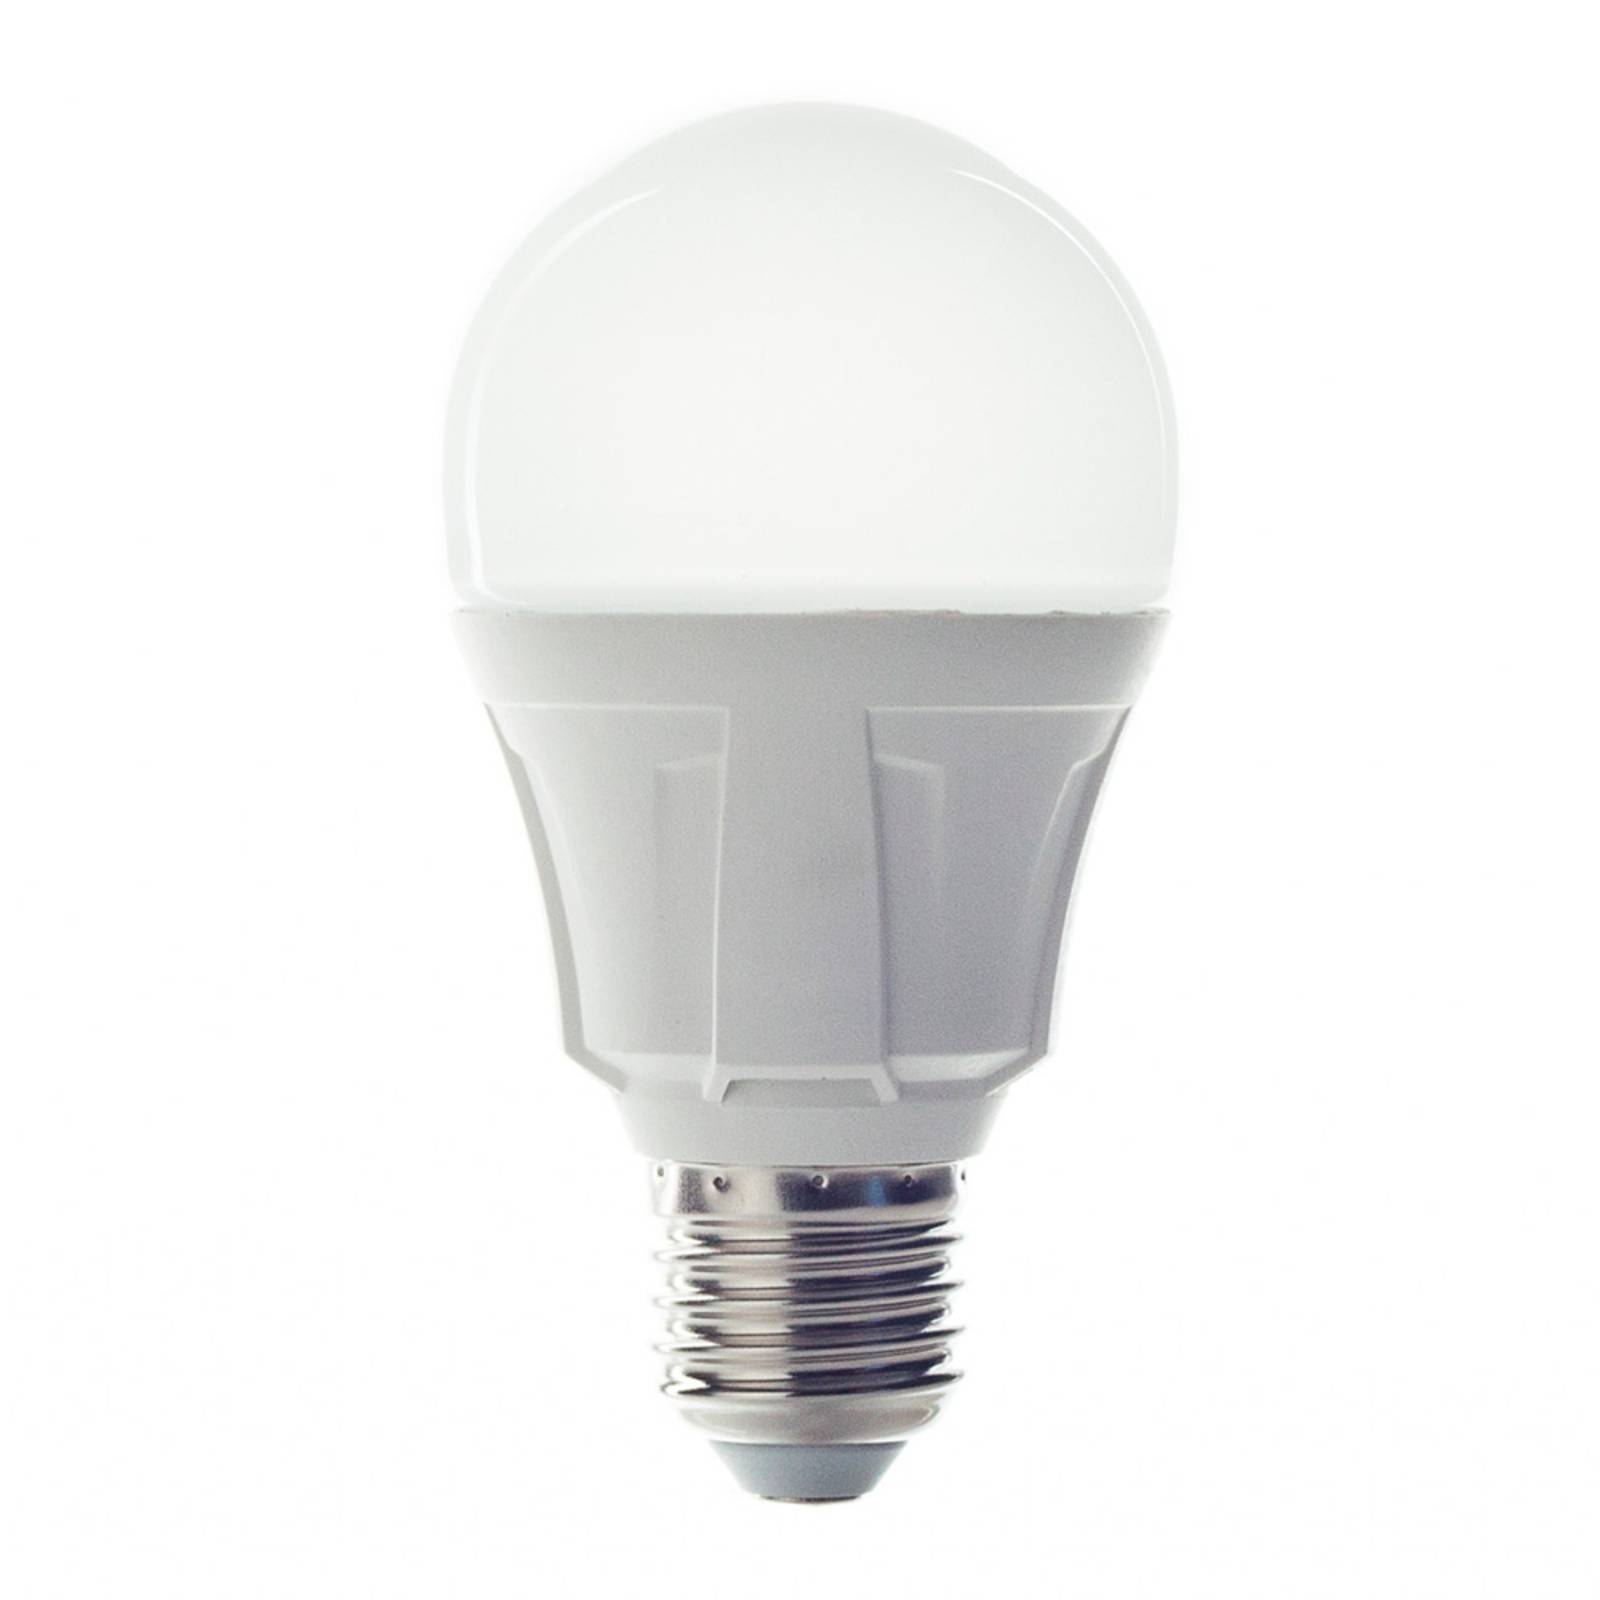 Фото - Лампочка Lindby E27 11W 830 żarówka LED w formie żarówki, ciepła biel 